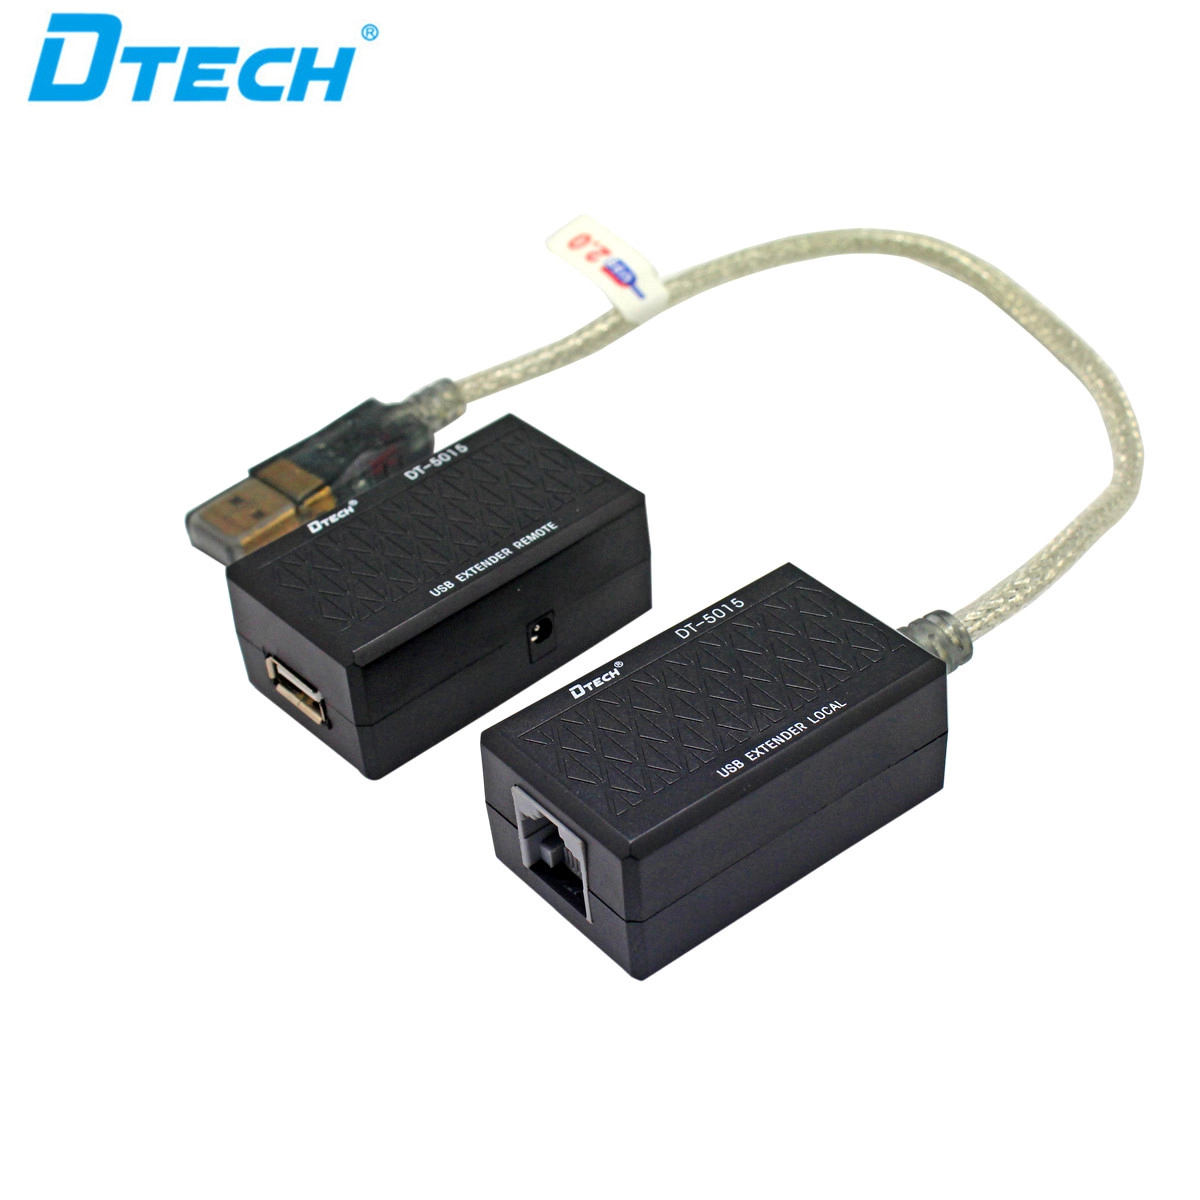 DTECH DT-5015 Bộ mở rộng USB 60M bằng cáp lan